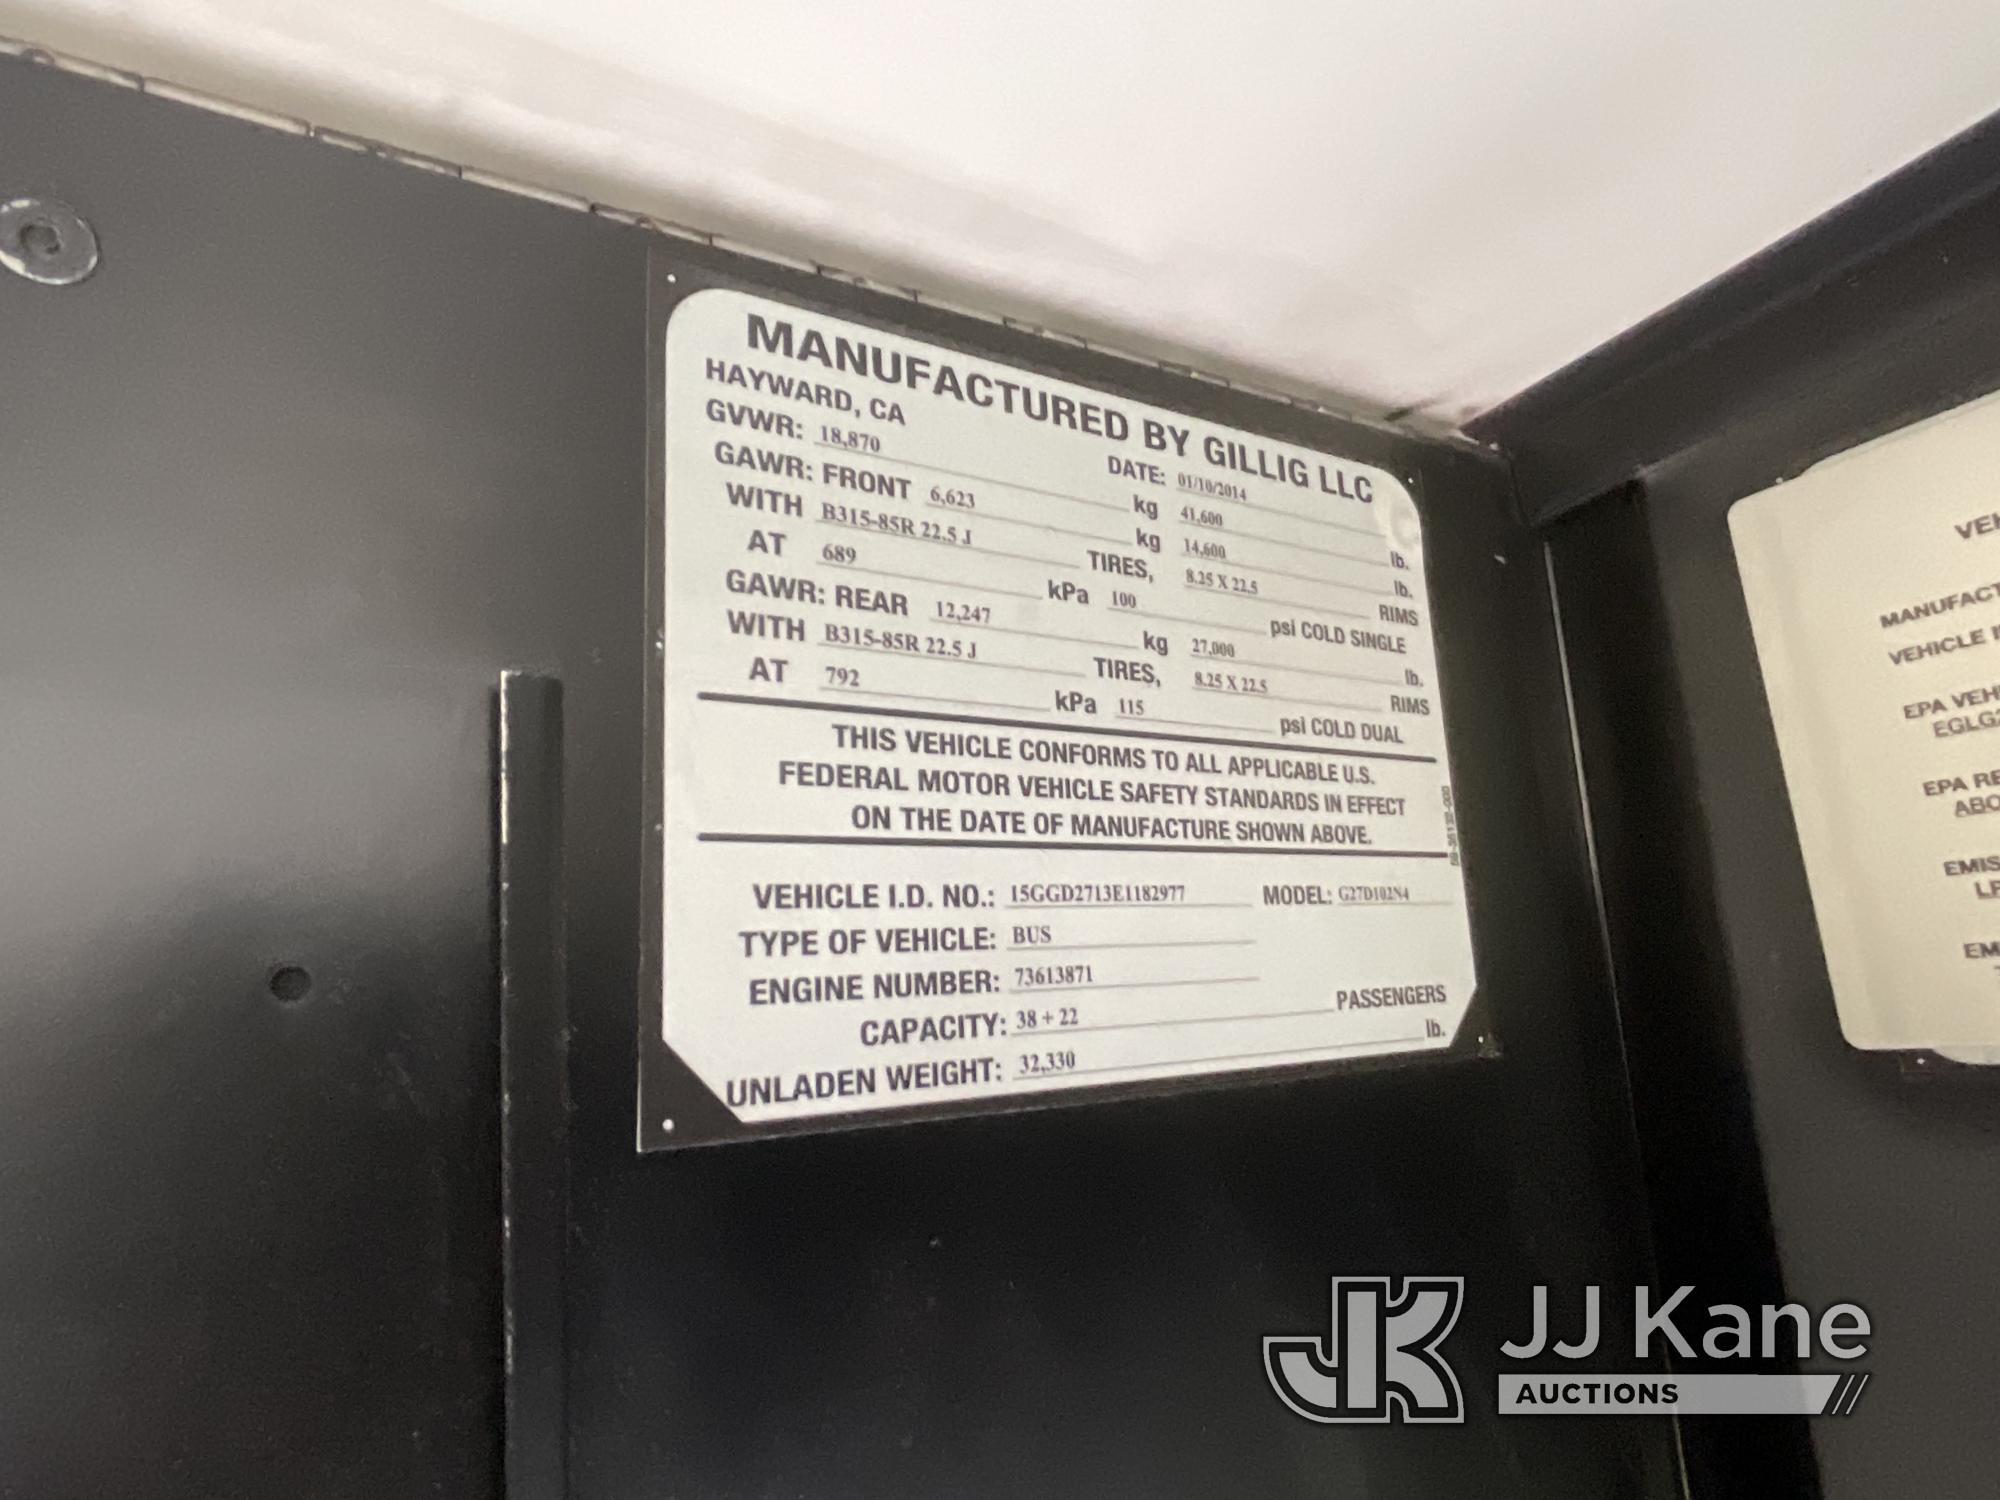 (Jurupa Valley, CA) 2014 Gillig Lower Floor Bus Not Running, Missing Parts